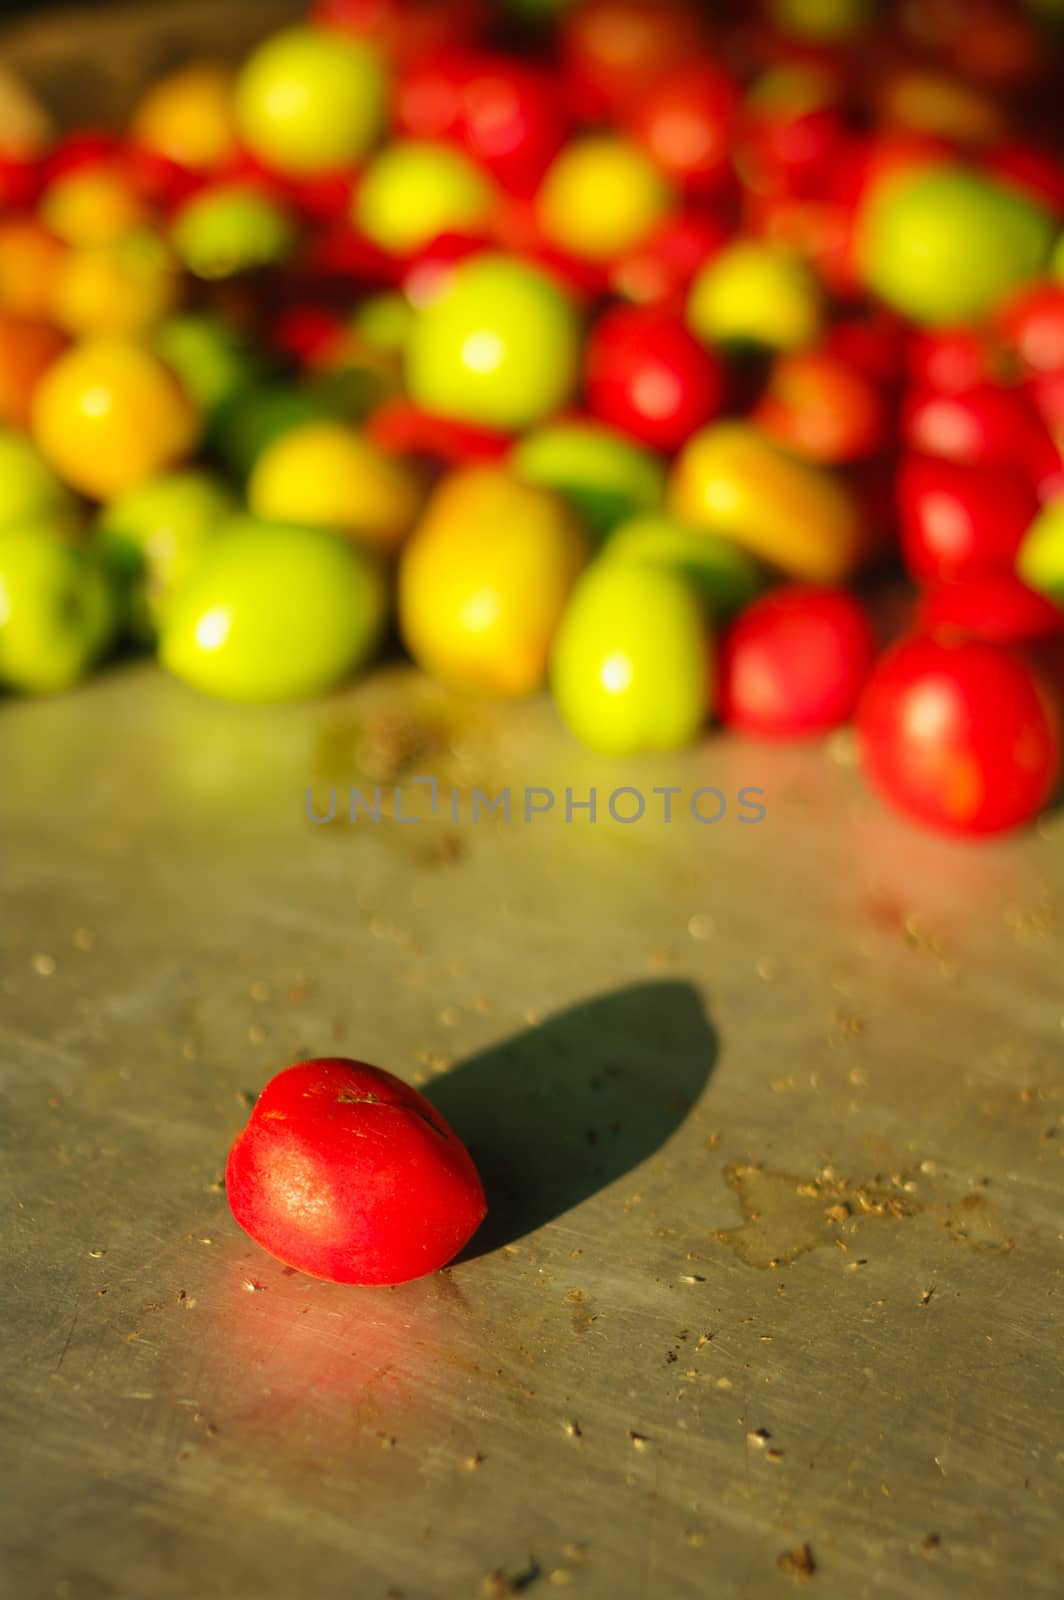 small tomato in fresh market